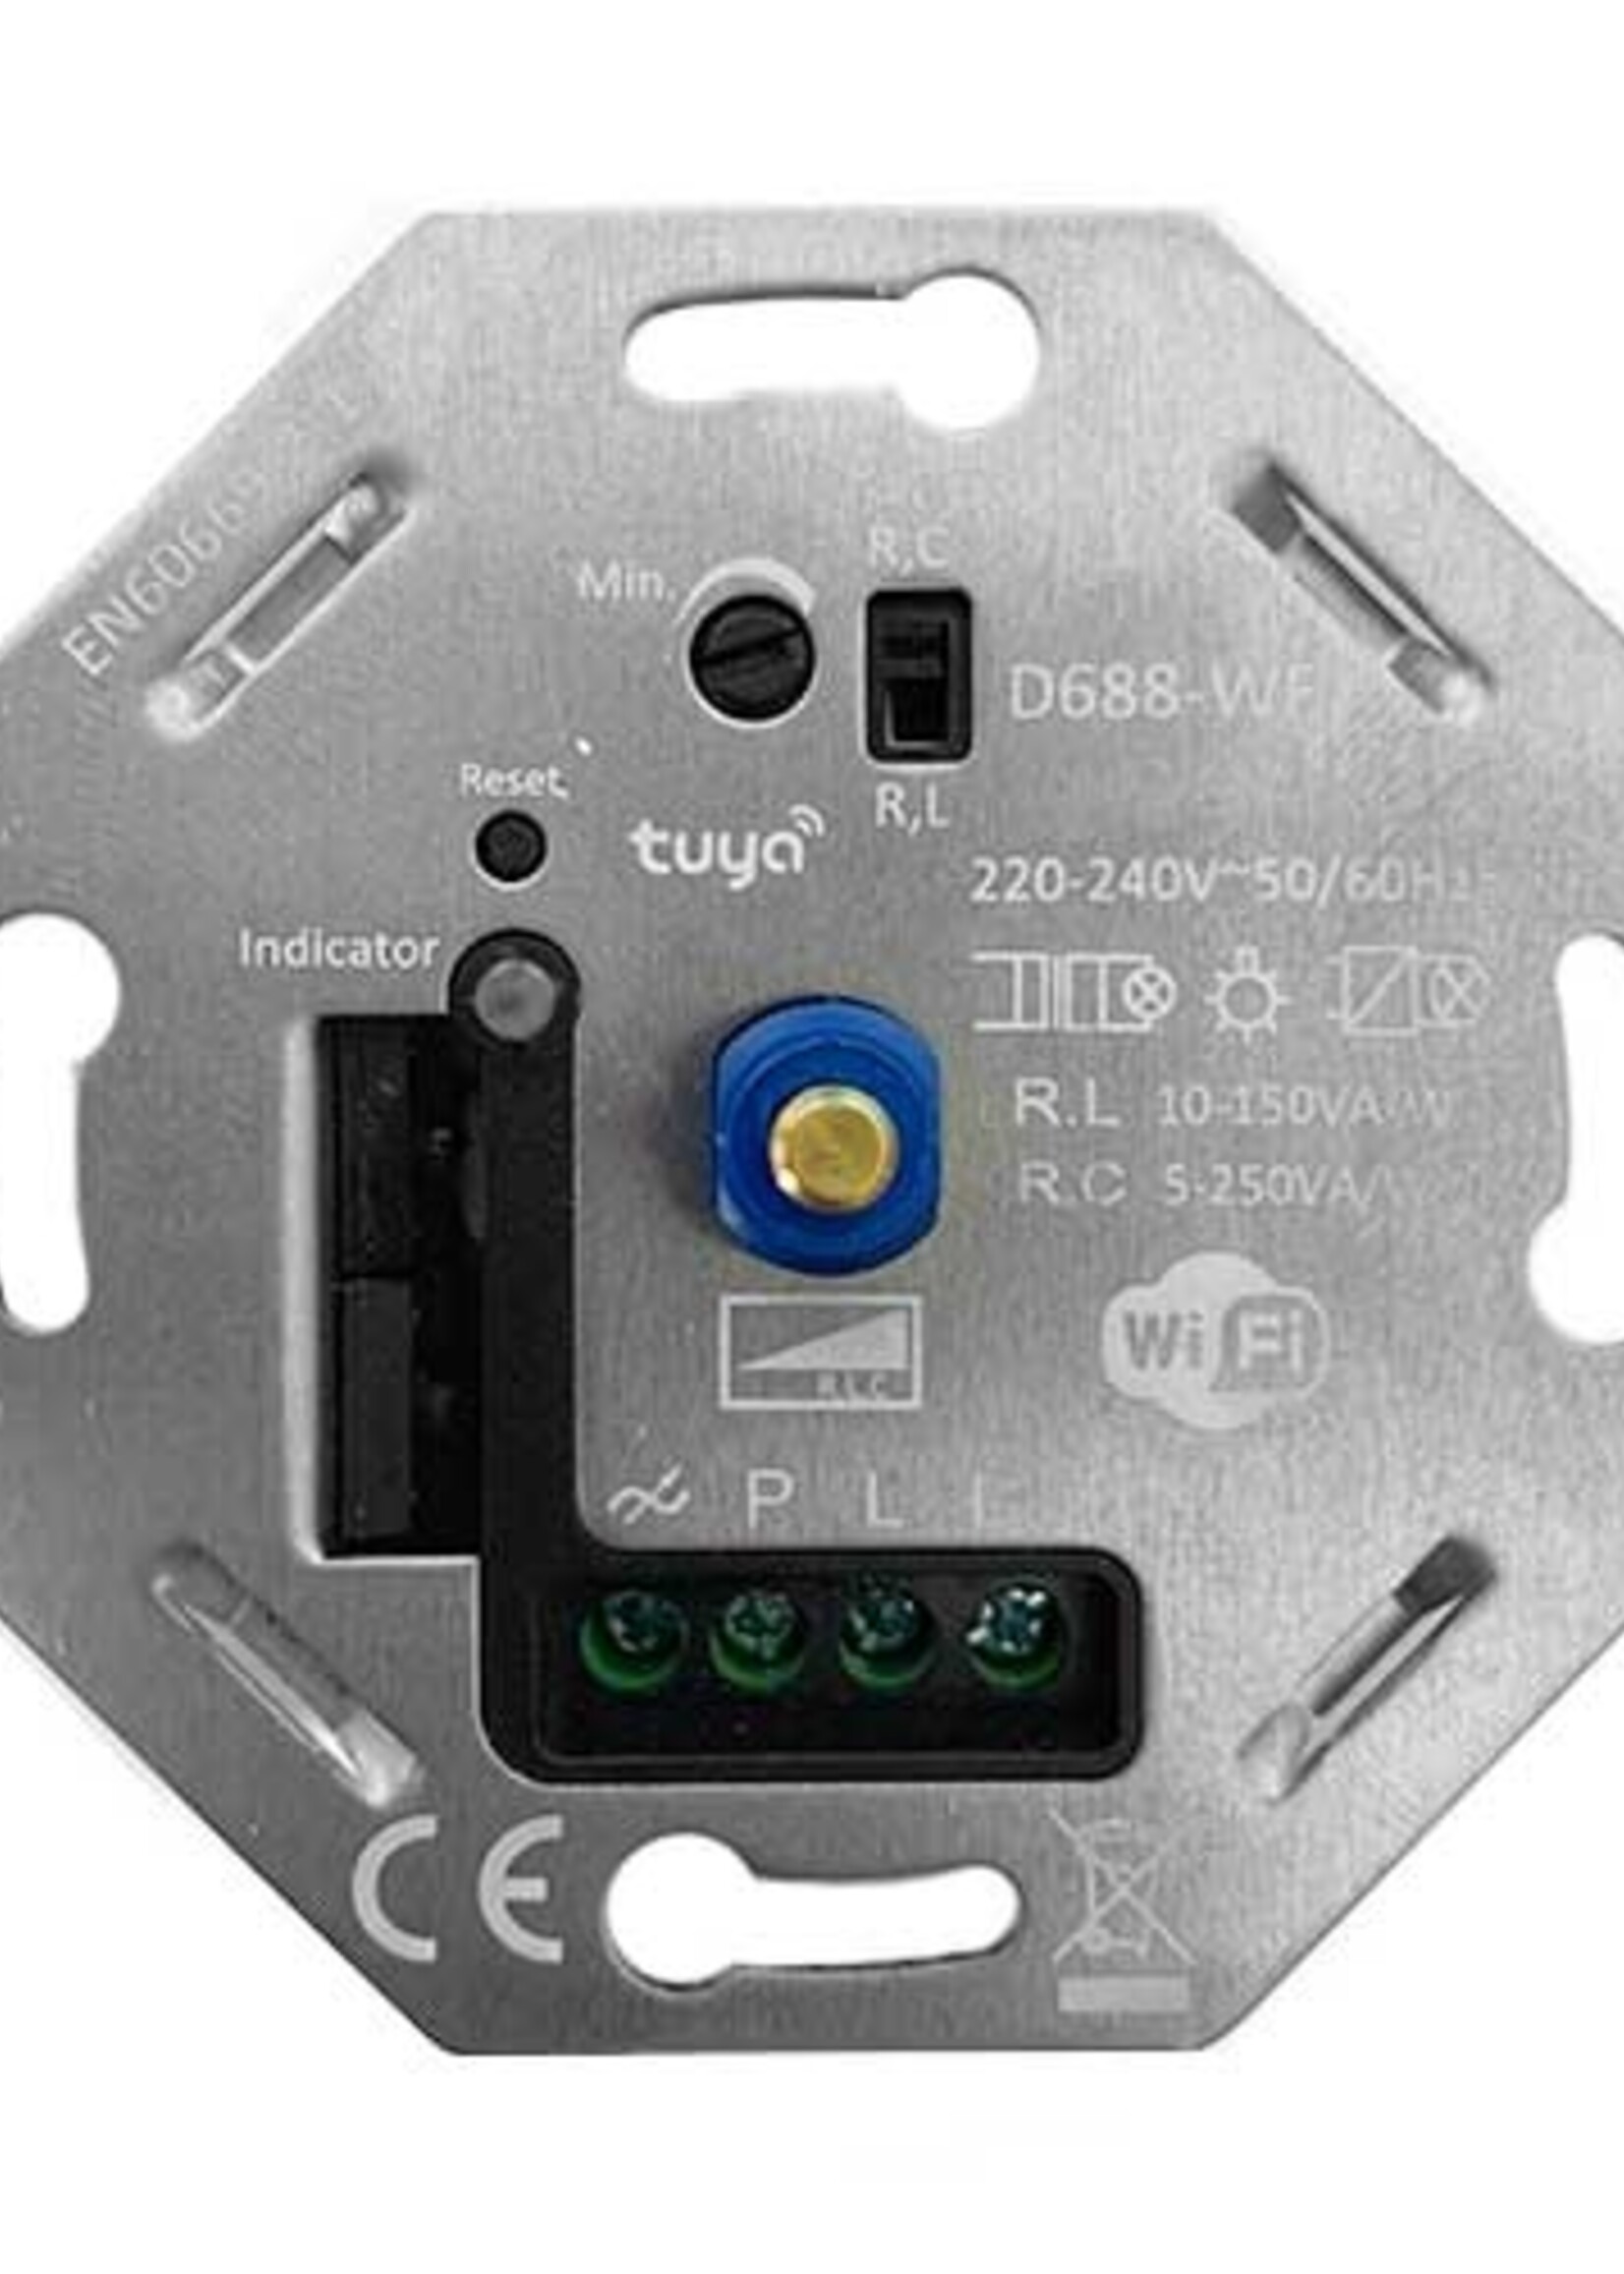 LEDWINKEL-Online WiFi LED Dimmer 5-150W fase afsnijding/aansnijding